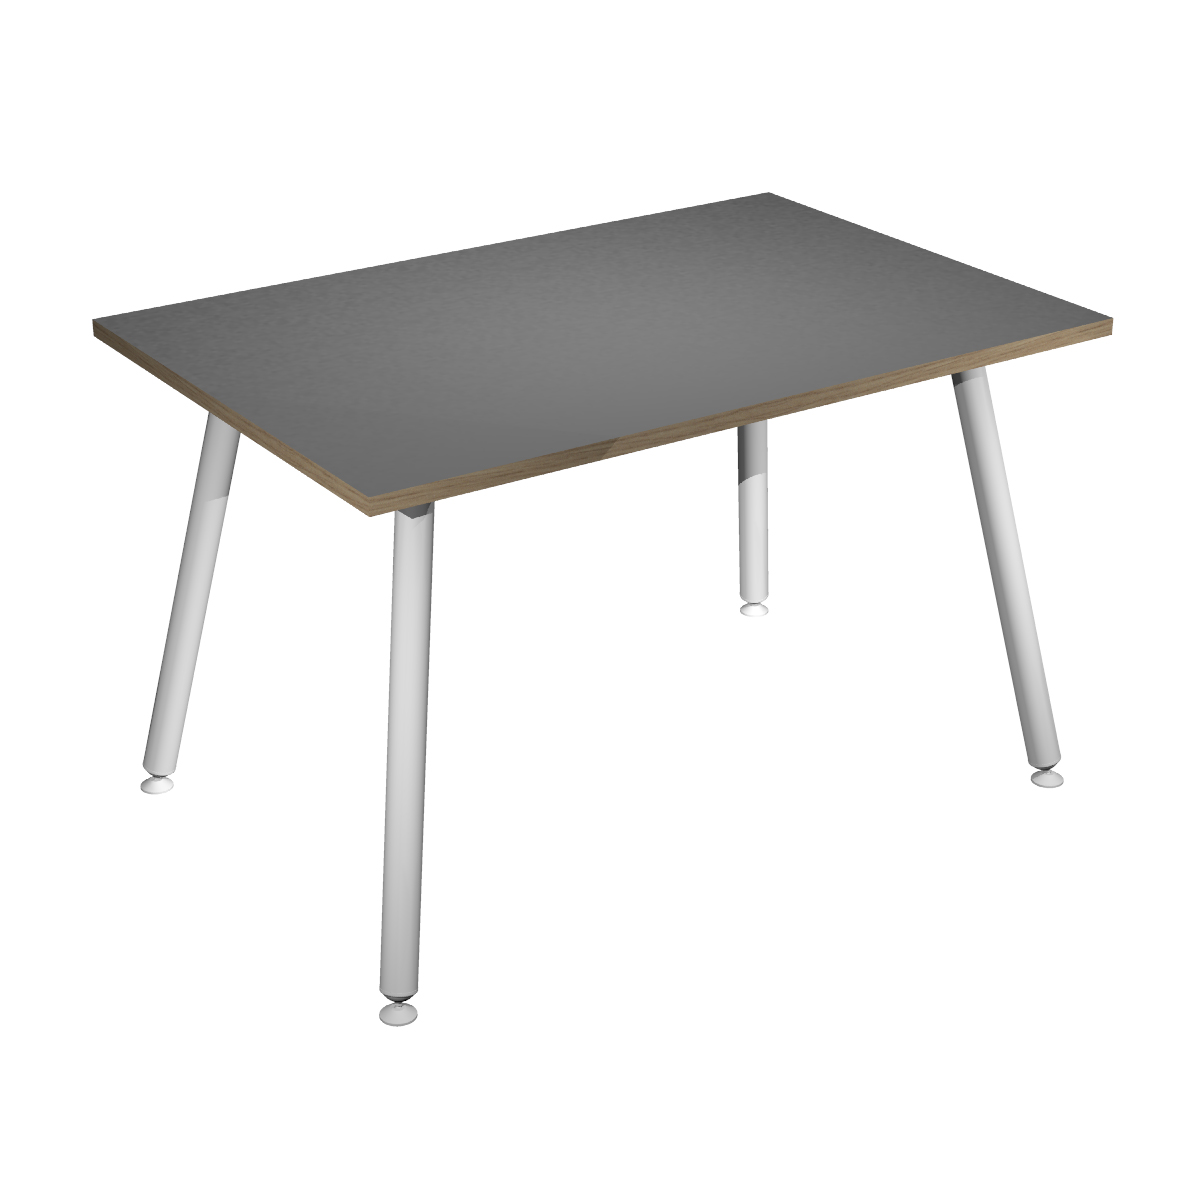 Table haute LEONARDO - 120 x 80 x 105 cm - Pieds métal blancs - Anthracite chants chêne